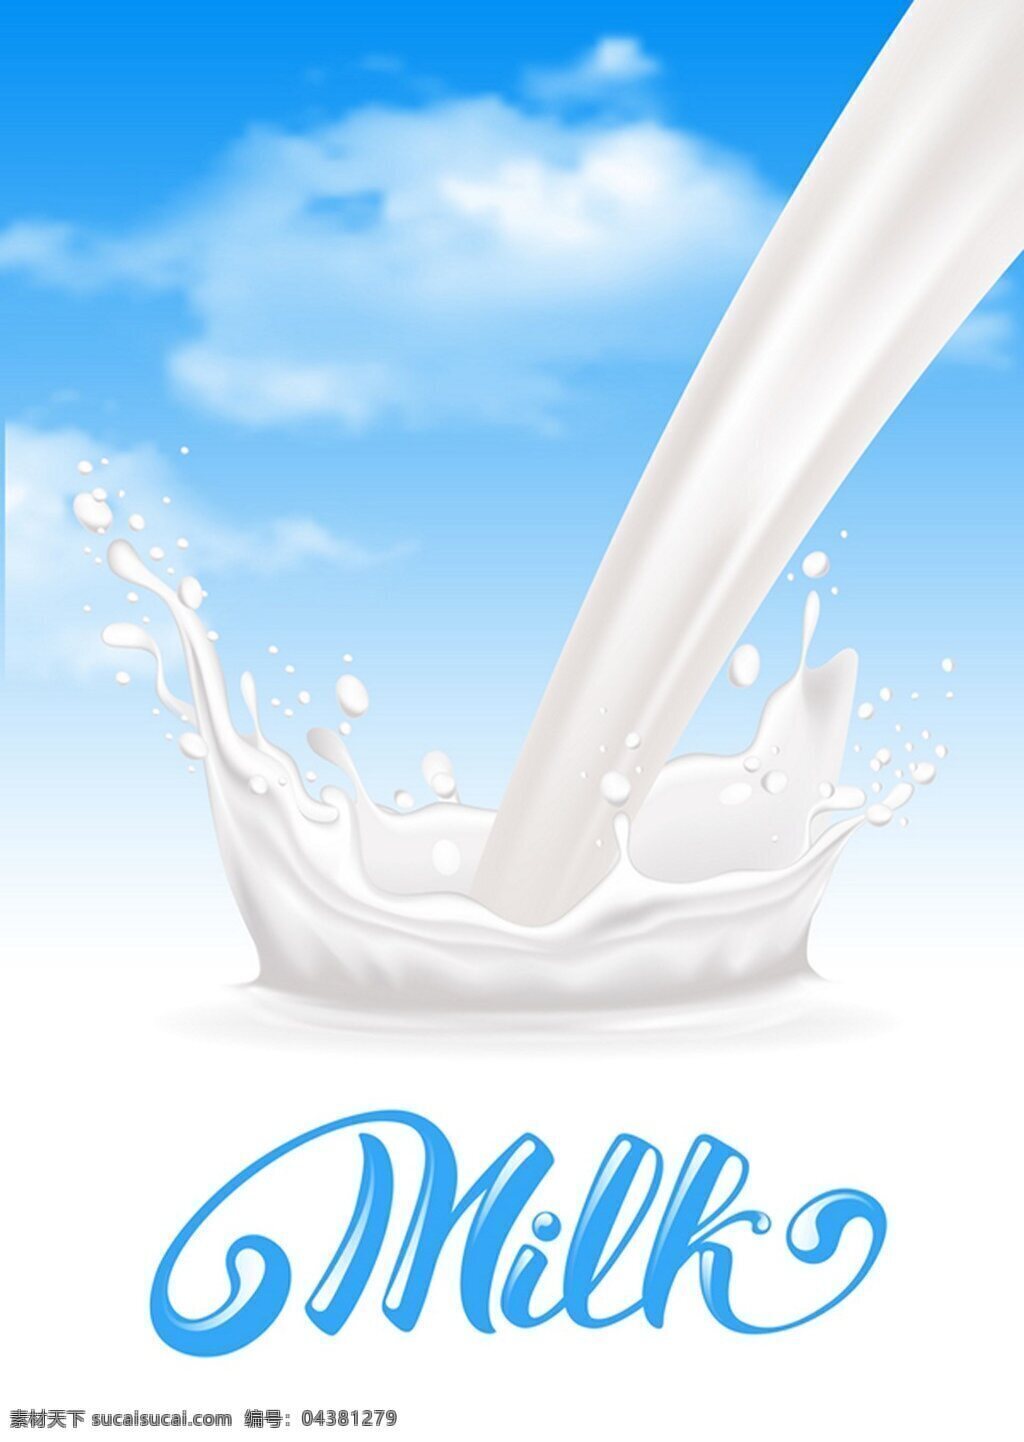 牛奶广告背景 饮料 水 牛奶 蓝色背景